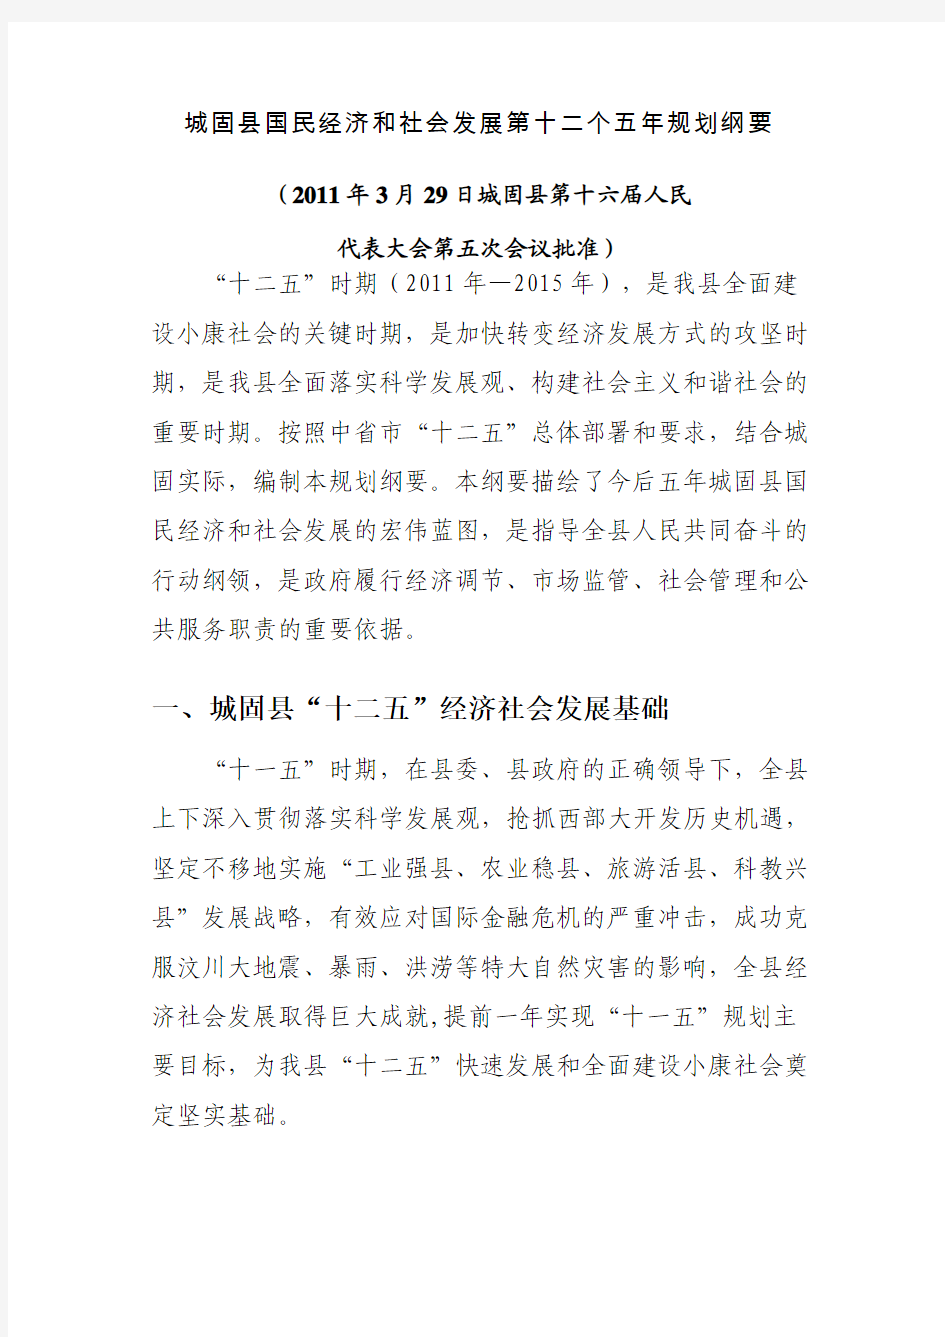 城固县国民经济和社会发展第十二个五年规划纲要